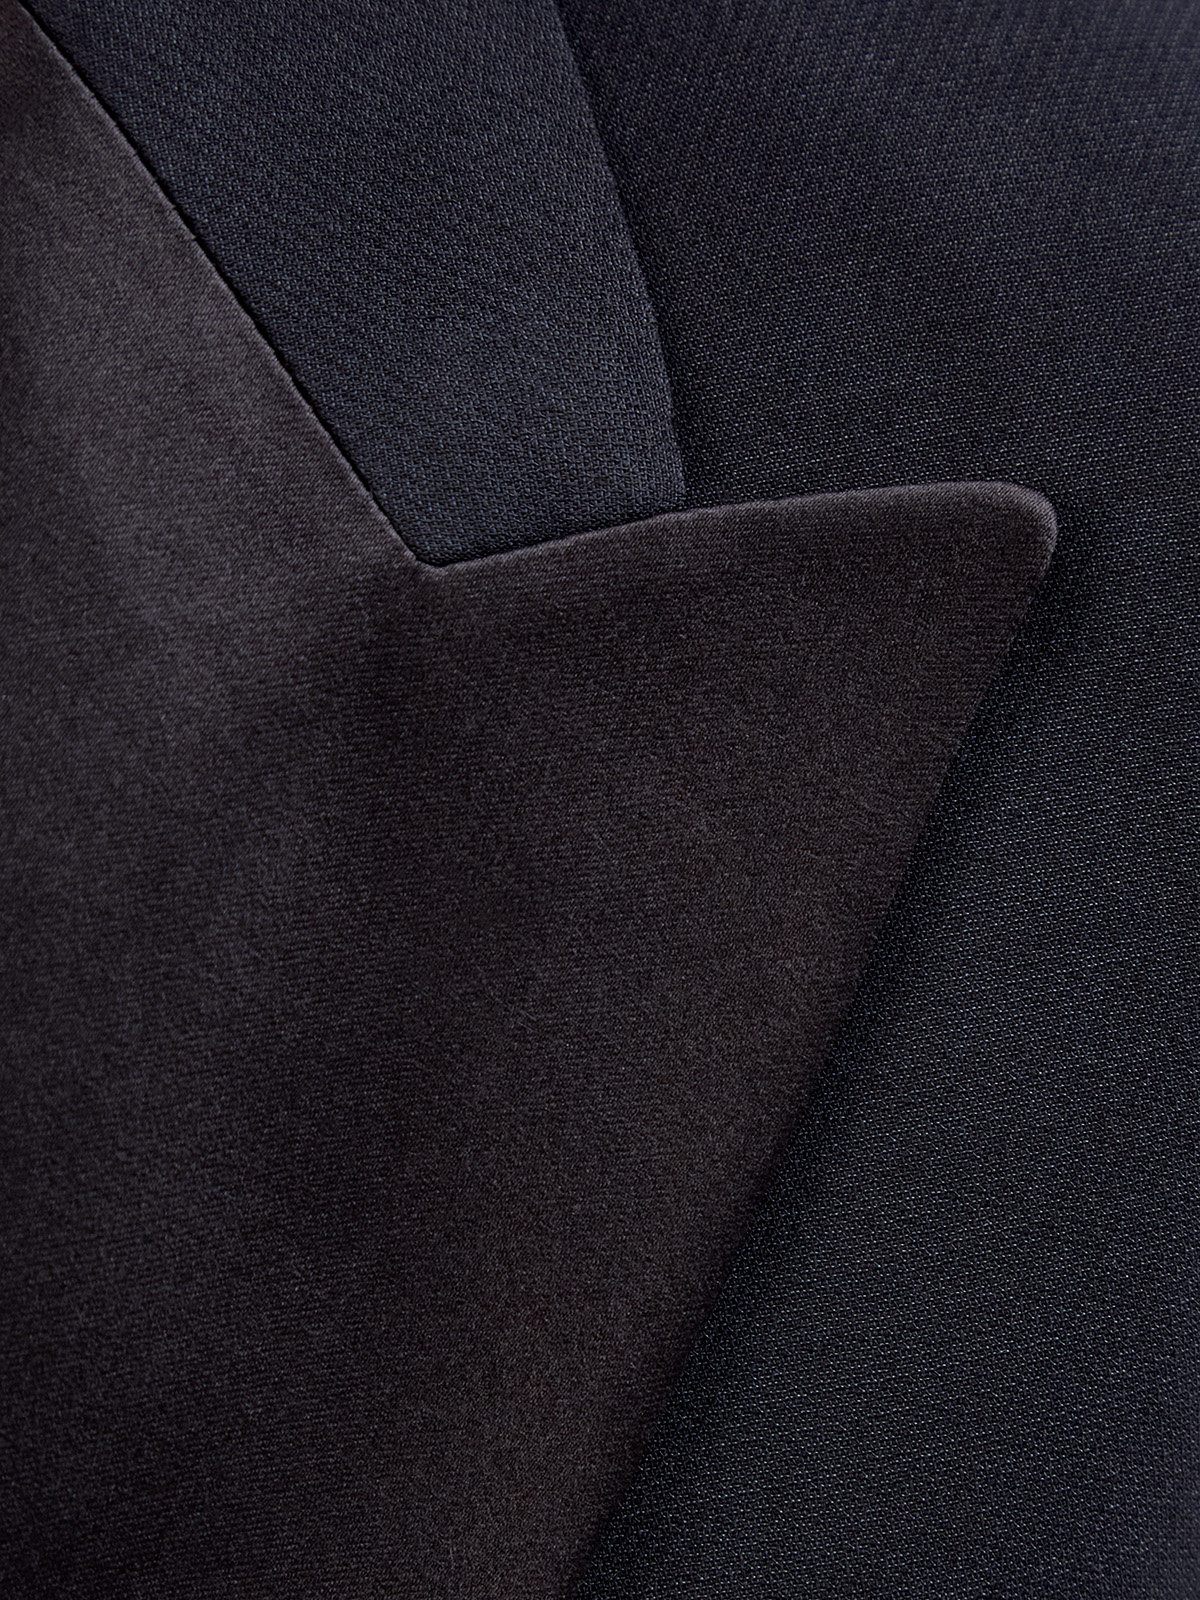 Двубортный жакет в стиле смокинга из шерстяного и шелкового крепа FABIANA FILIPPI, цвет черный, размер 40;44 - фото 5